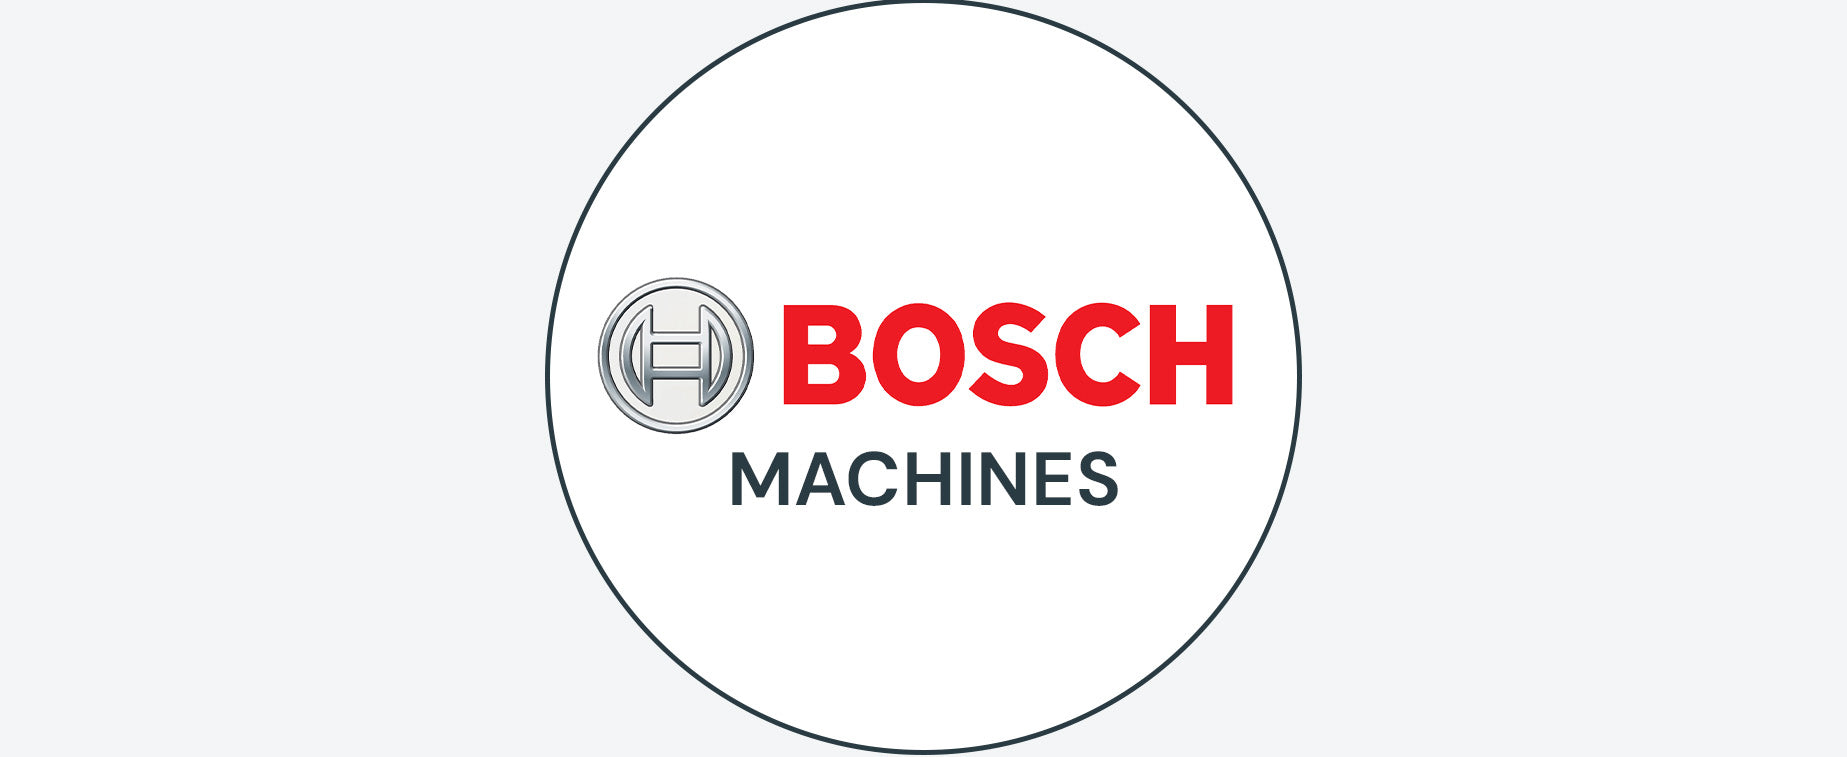 BOSCH MACHINES